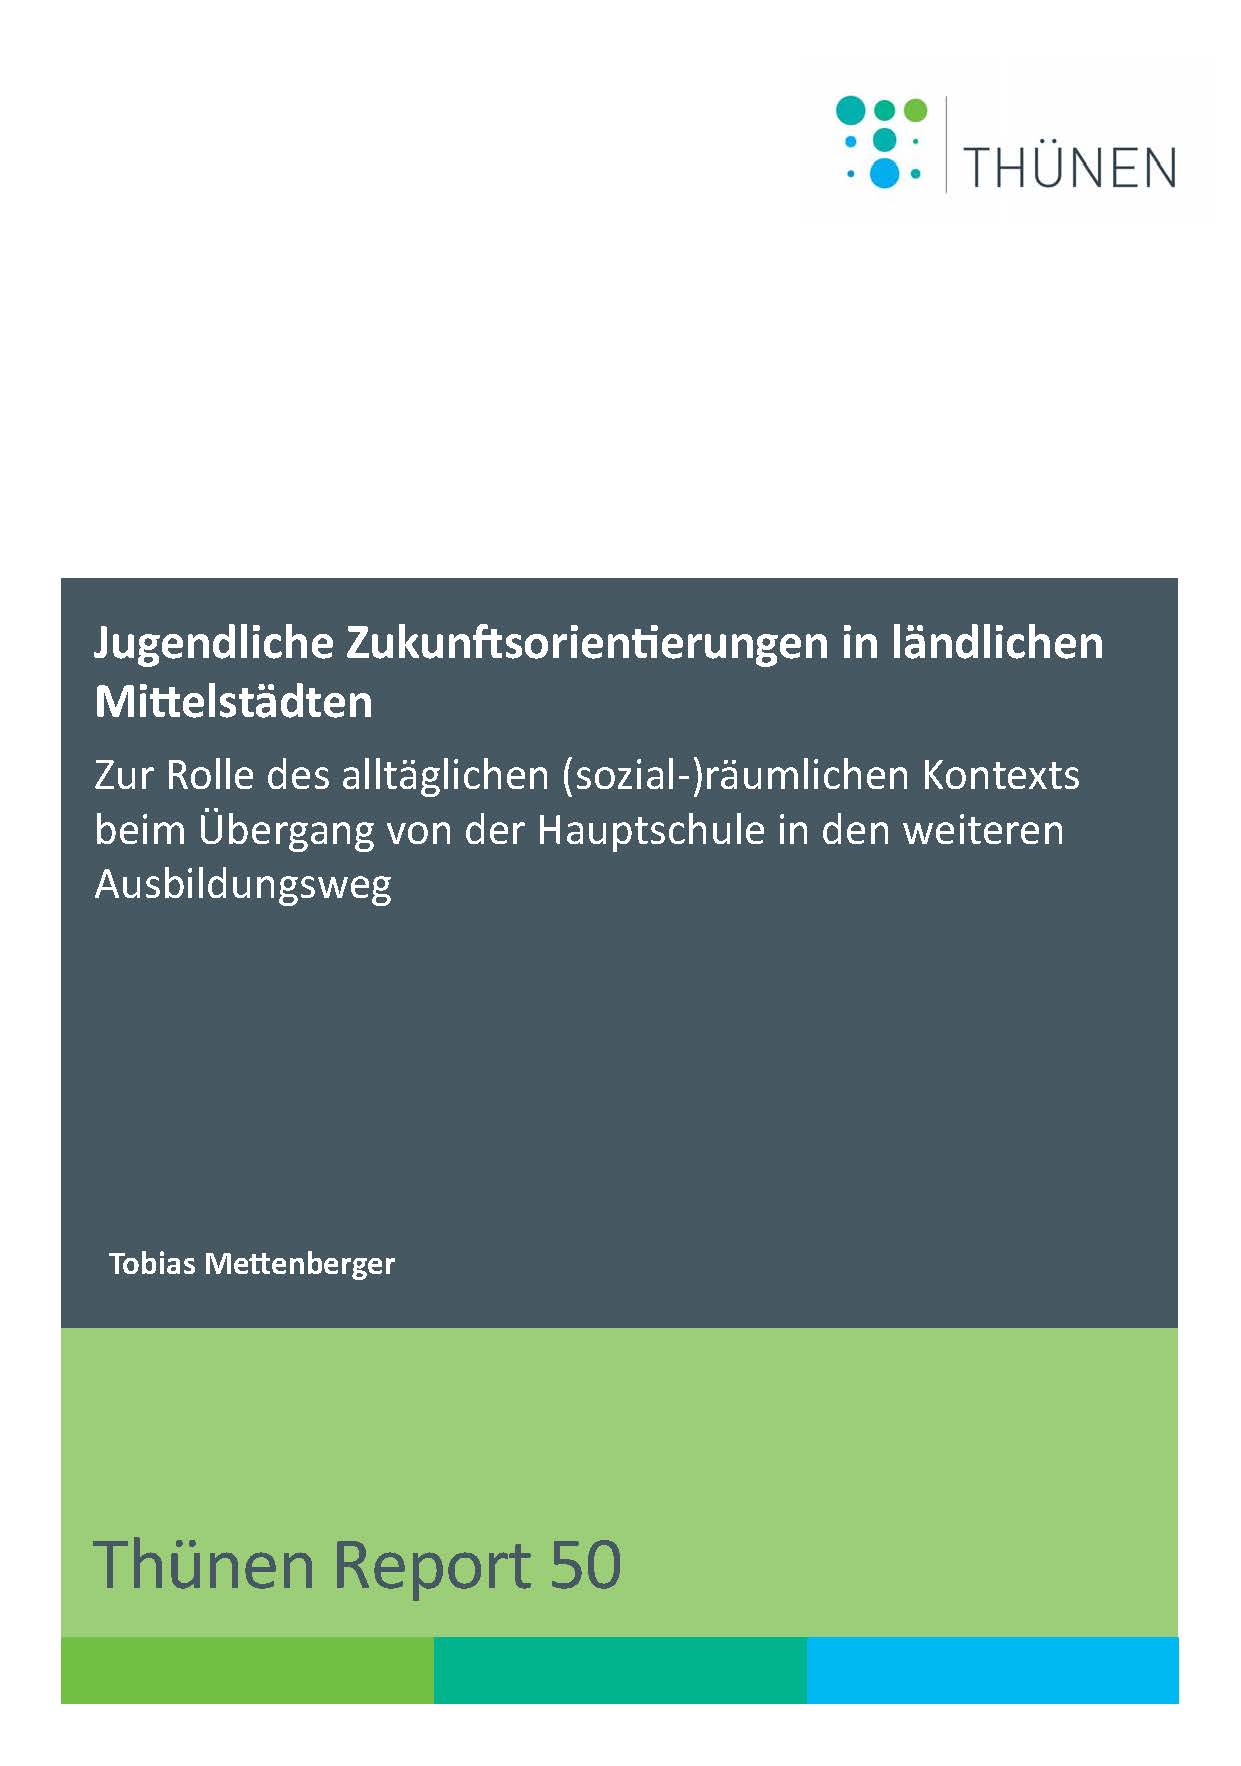 Deckblatt des Thünen Reports 50 von Tobias Mettenberger